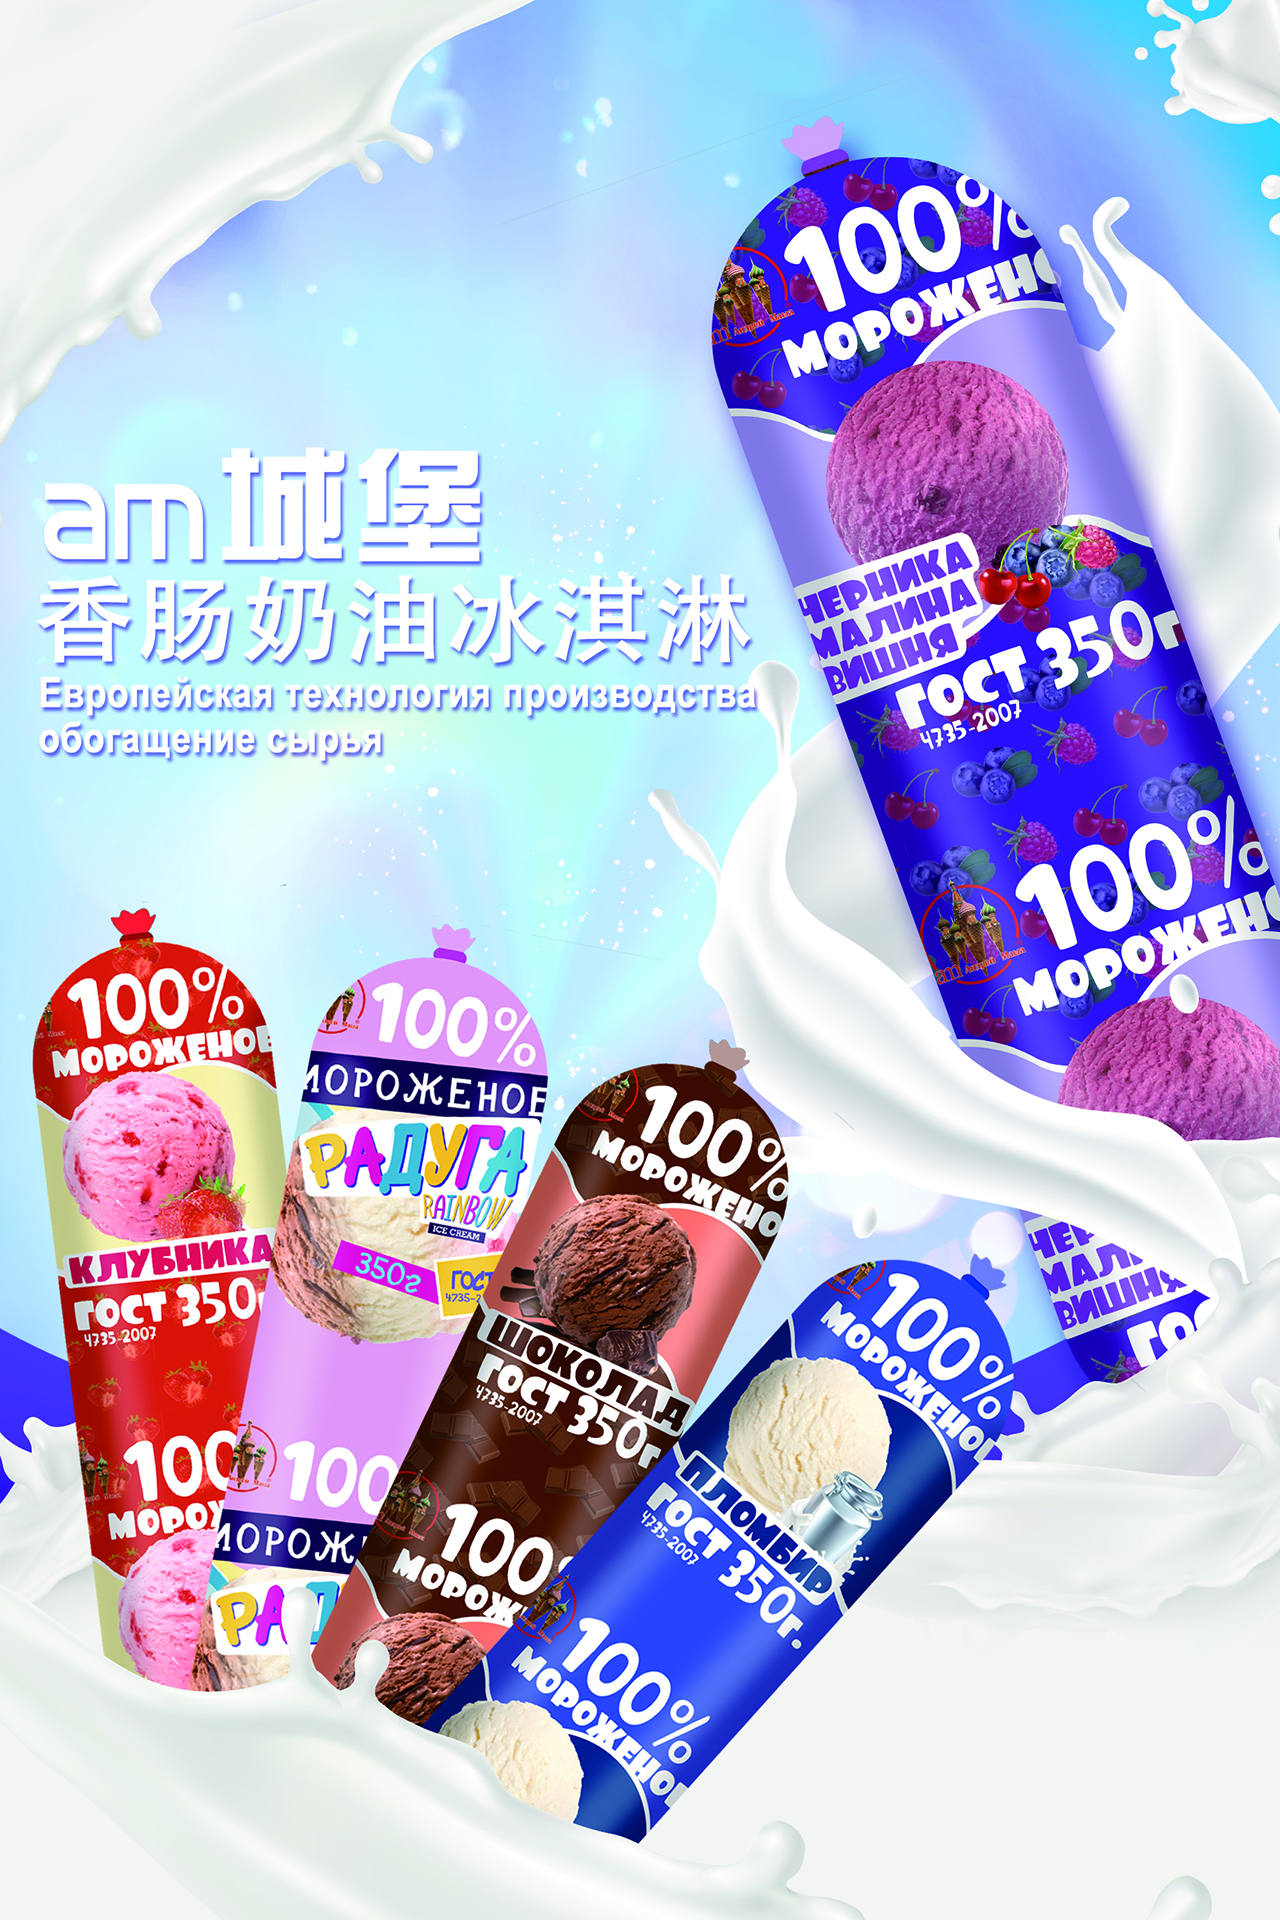 am海象皇宫冰淇淋新鲜度较高，不断在原料和吃法上创新